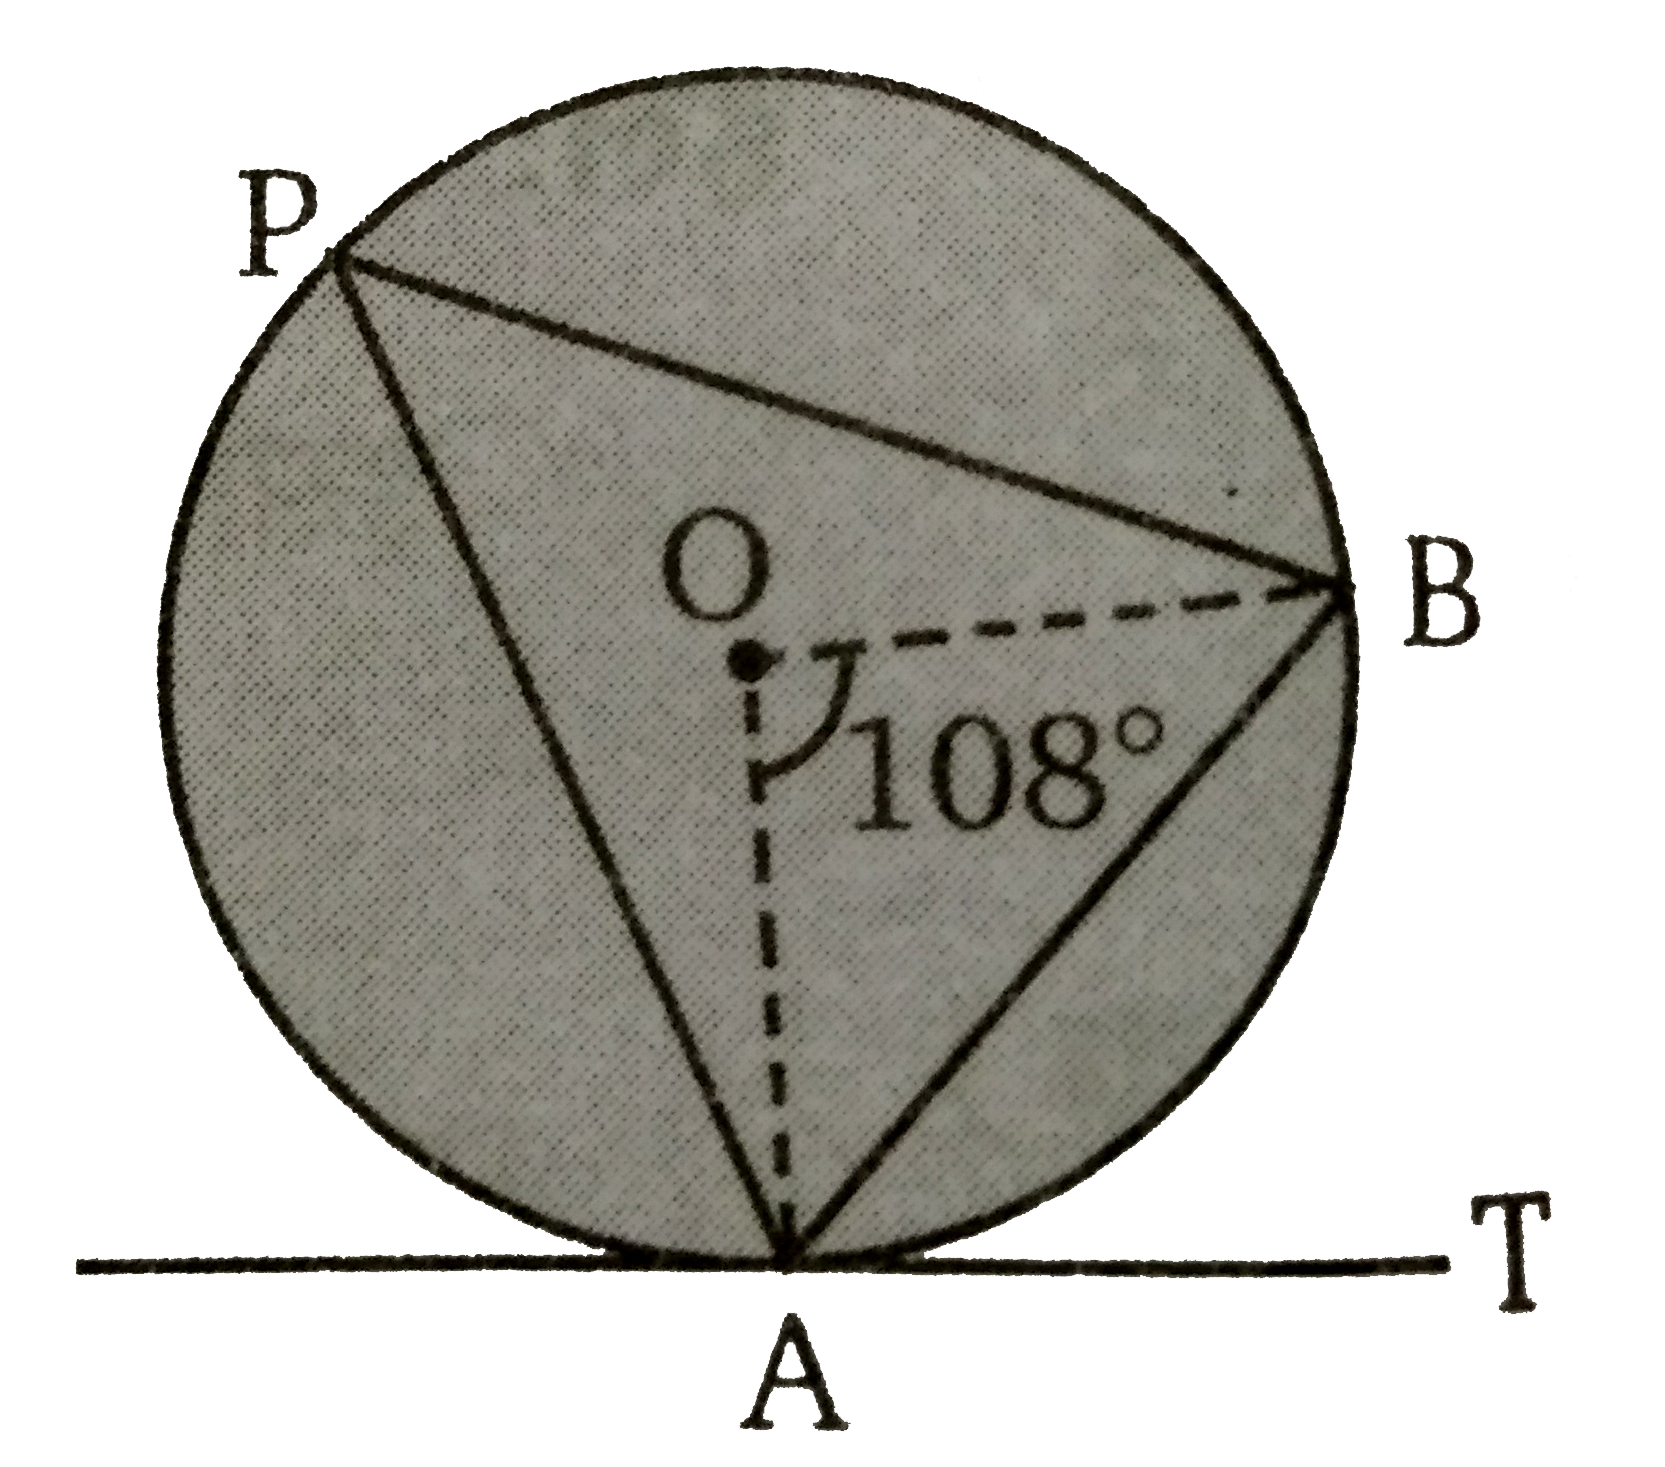 दिये गए चित्र में angle AOB = 108^(@)  तथा AT वृत्त के बिन्दु A पर स्पर्शी है तथा AB एक जीवा है। तब angleBAT का मान ज्ञात कीजिए ।